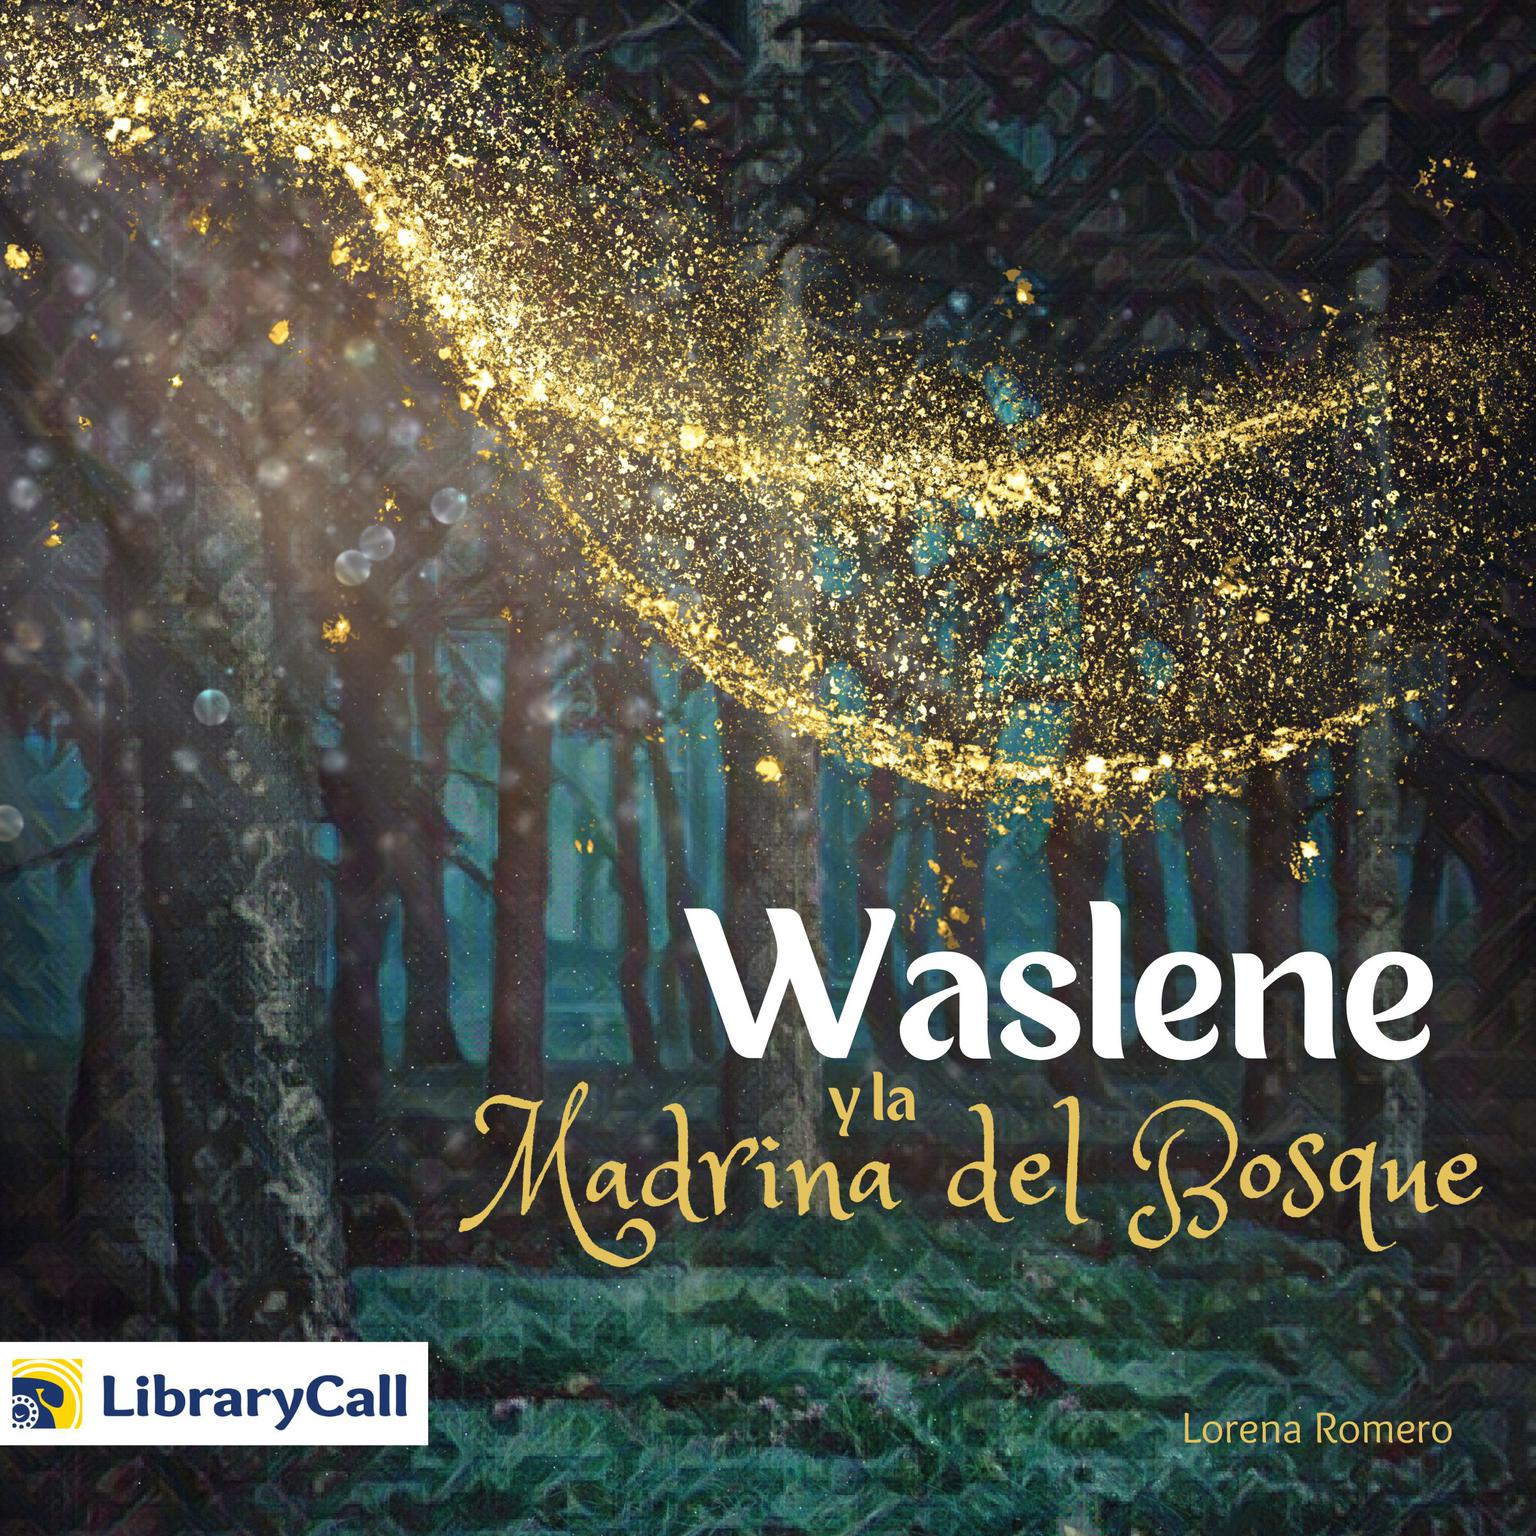 Waslene y la madrina del bosque Audiobook, by Lauren Kratz Prushko